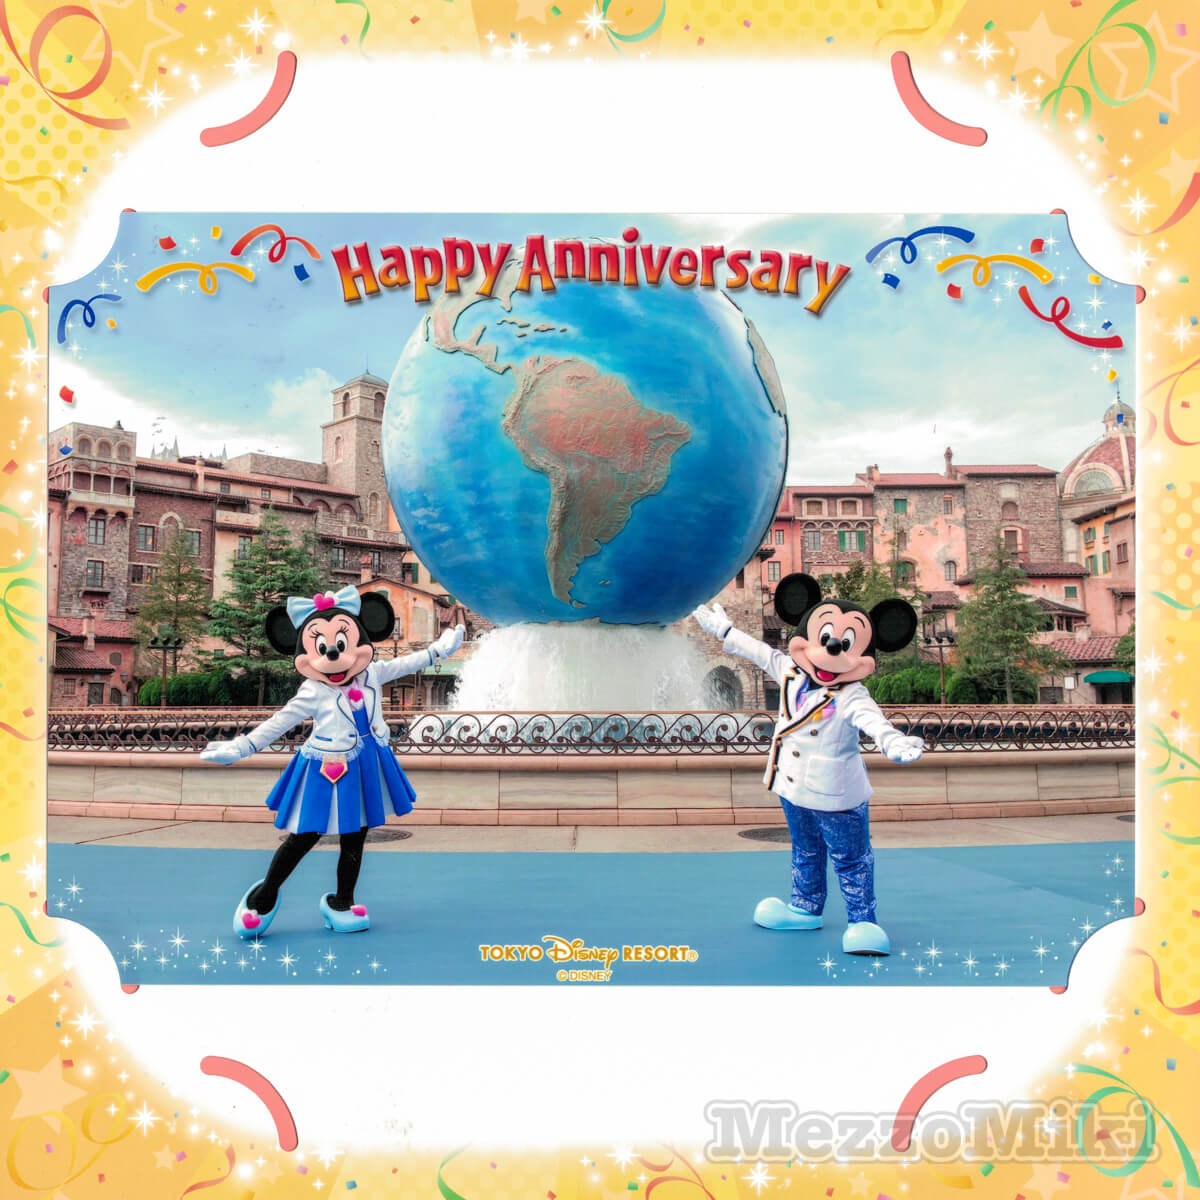 東京ディズニーシー｢Happy Anniversary｣スナップフォト2021